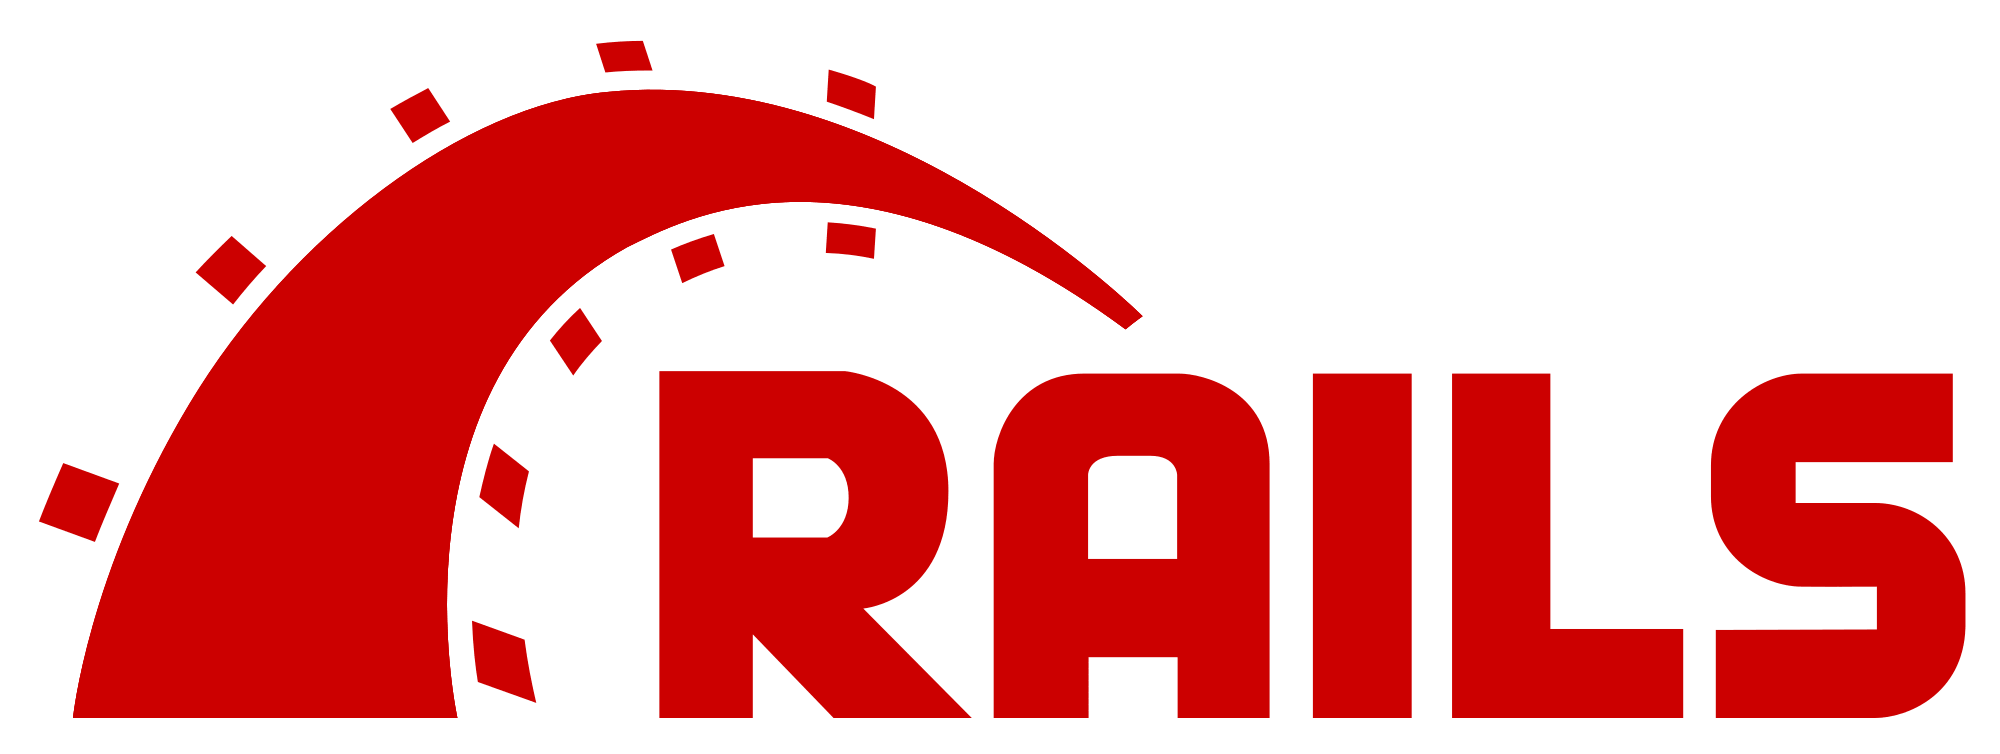 Ruby_On_Rails_Logo